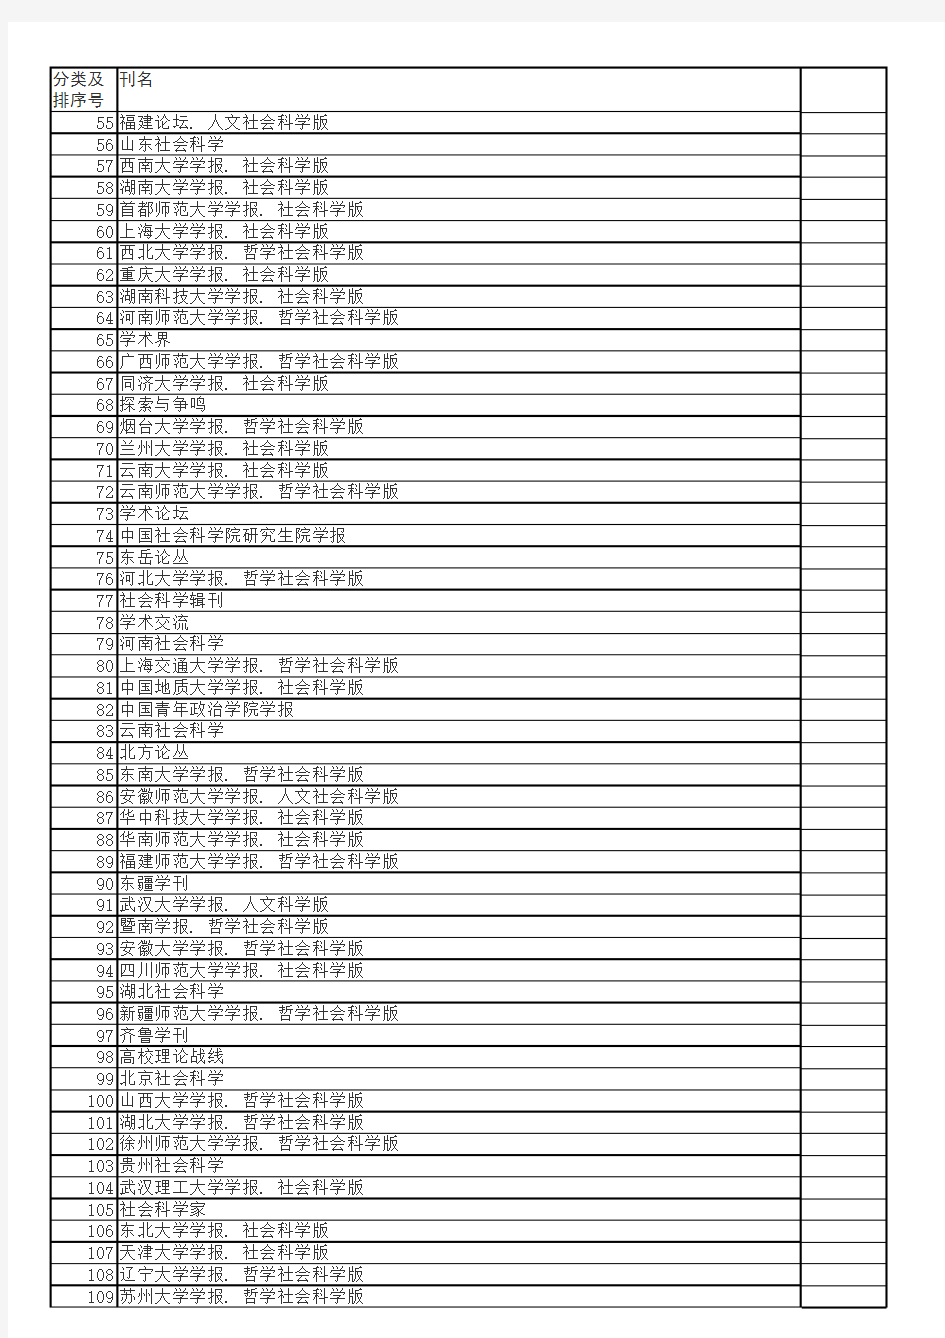 《中文核心期刊要目总览(2011年版)》分类表